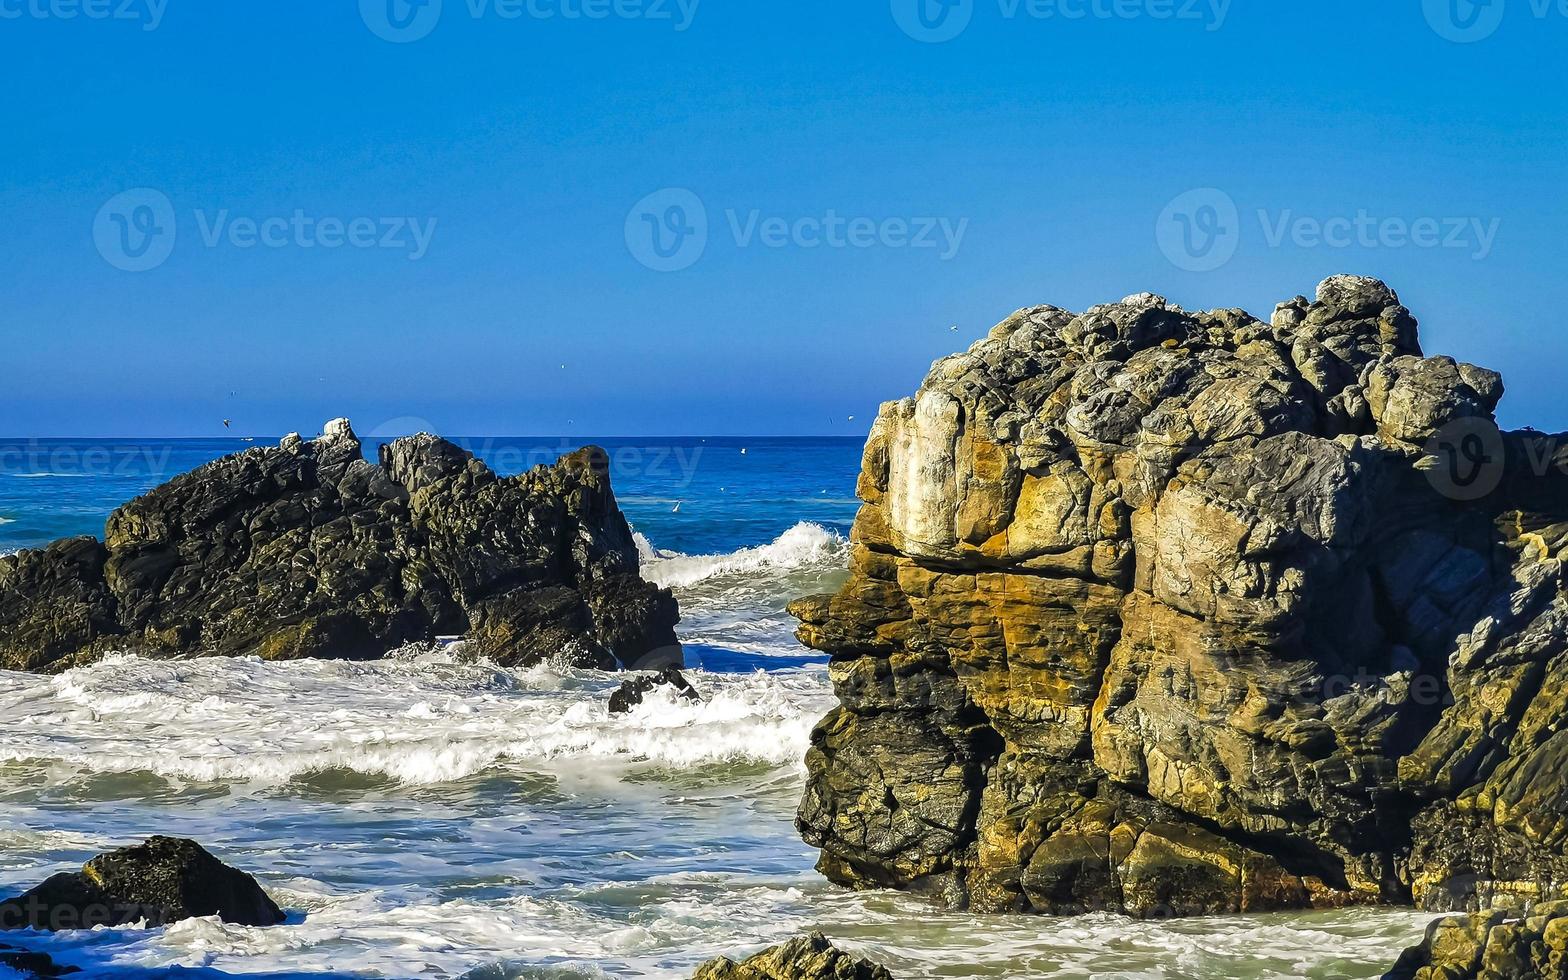 skön stenar klippor surfare vågor på strand puerto escondido Mexiko. foto